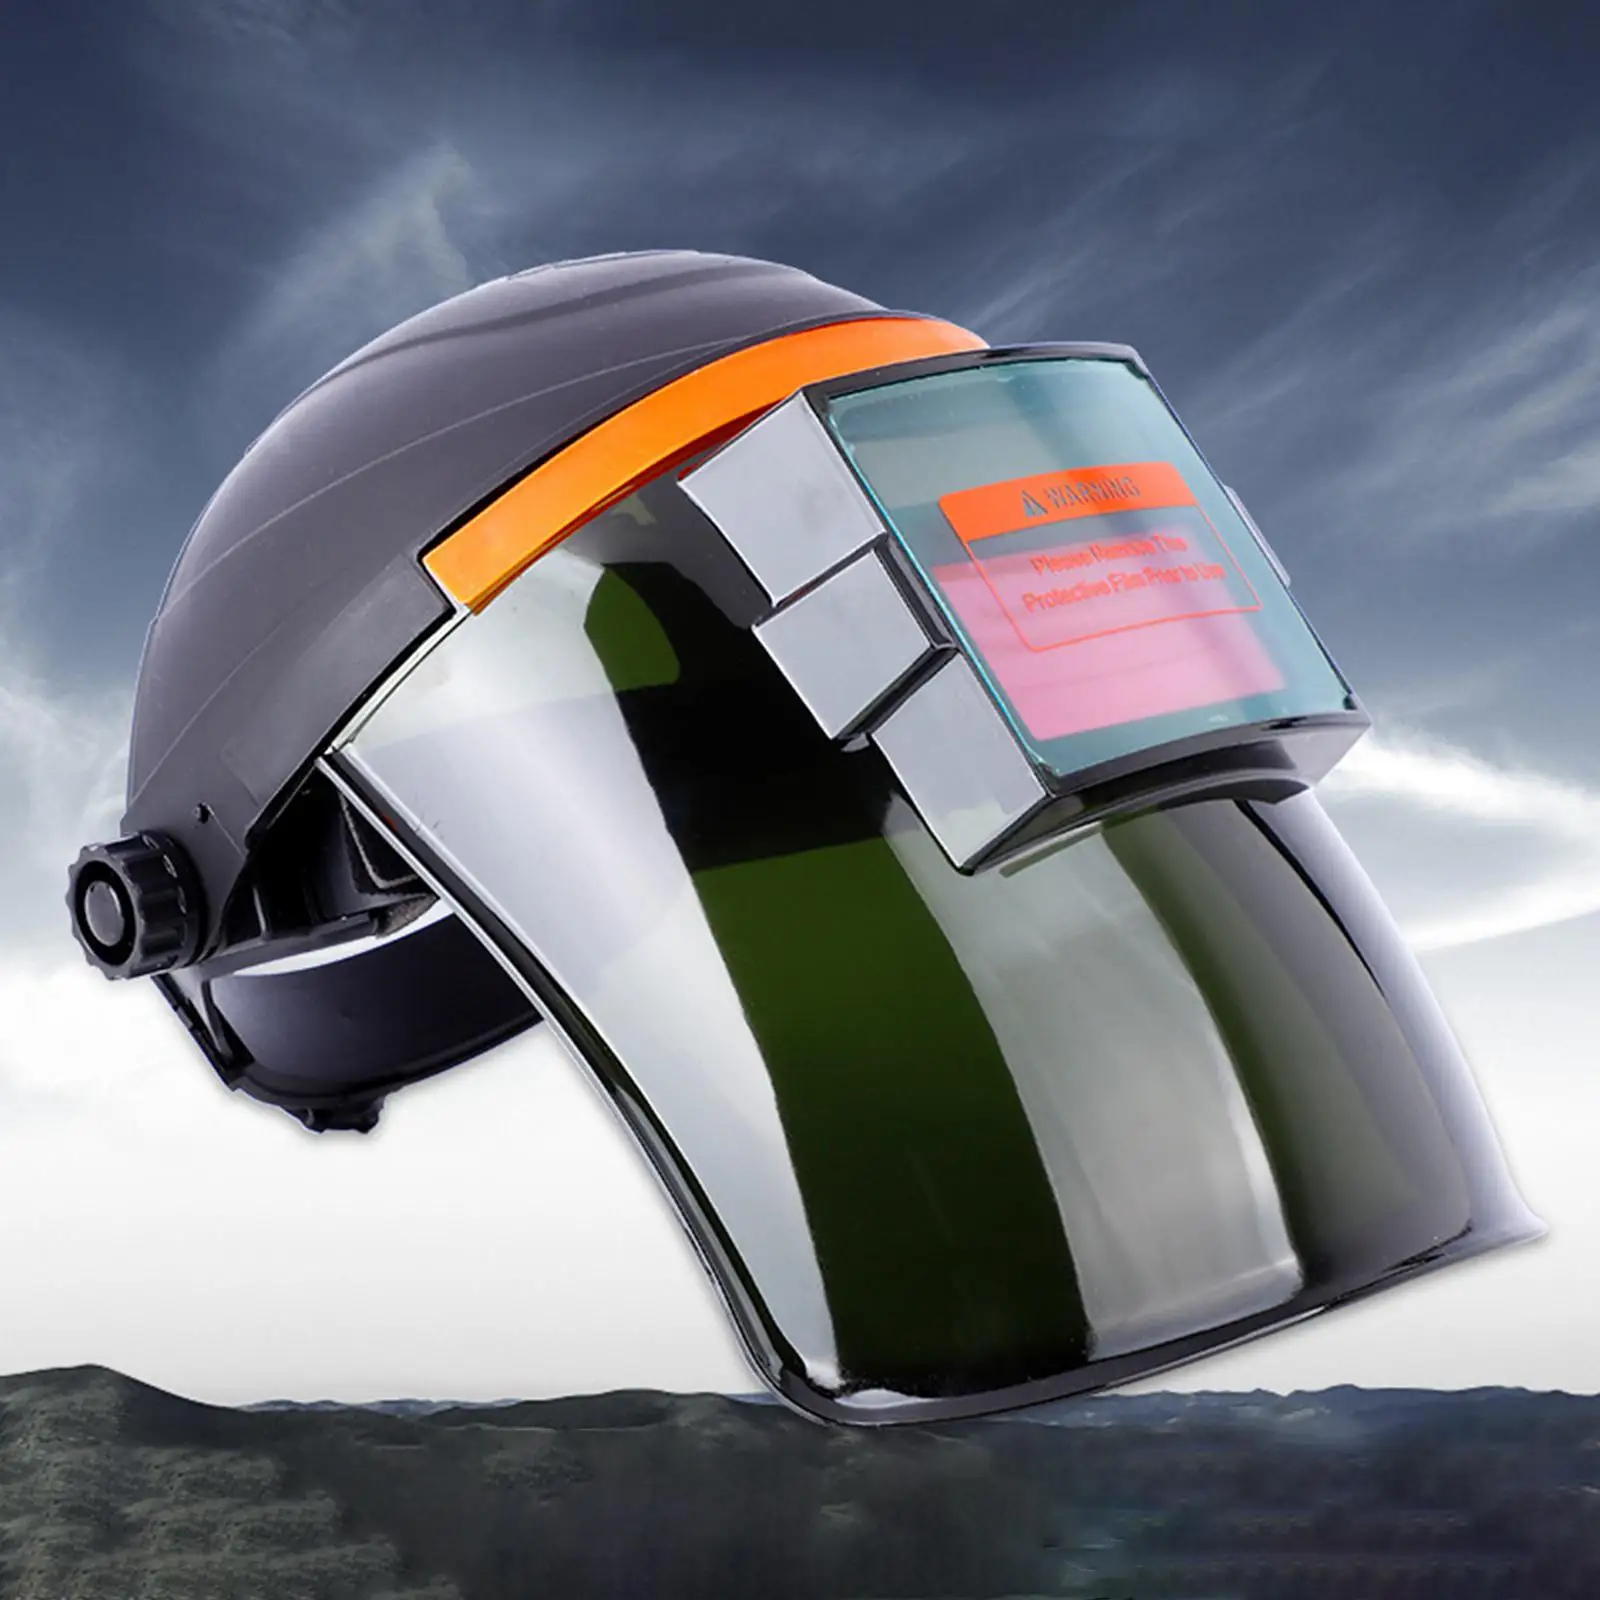 Large Viewing Screen Welding Helmet True Color Welder Glasses Helmet for TIG Mig ARC Weld Grinding All Welding Applications